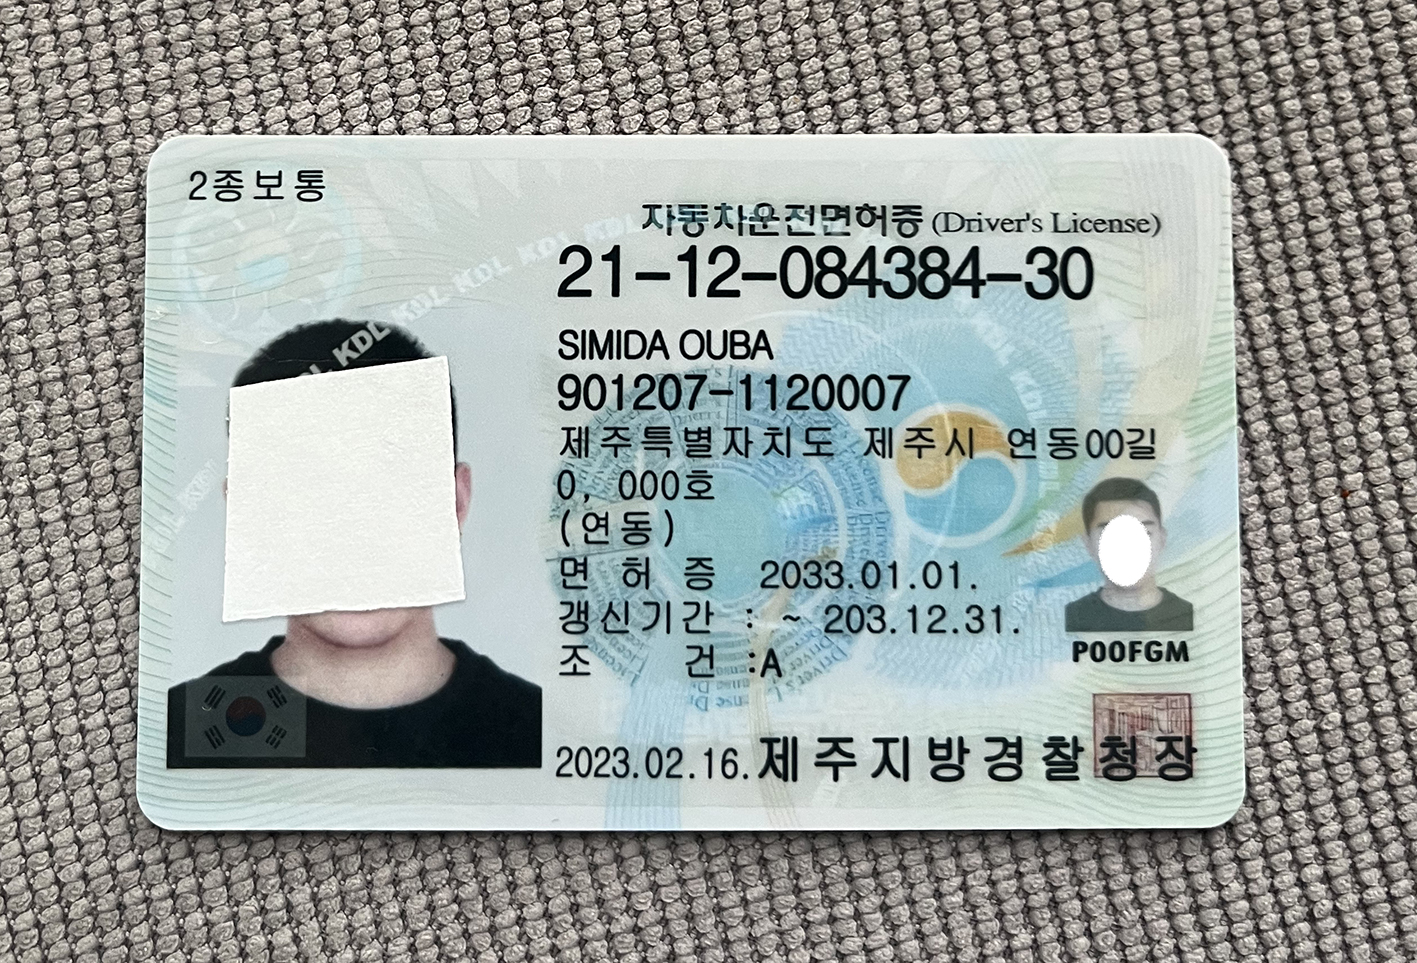 韩国驾驶证.jpg 韩国驾驶证 亚洲